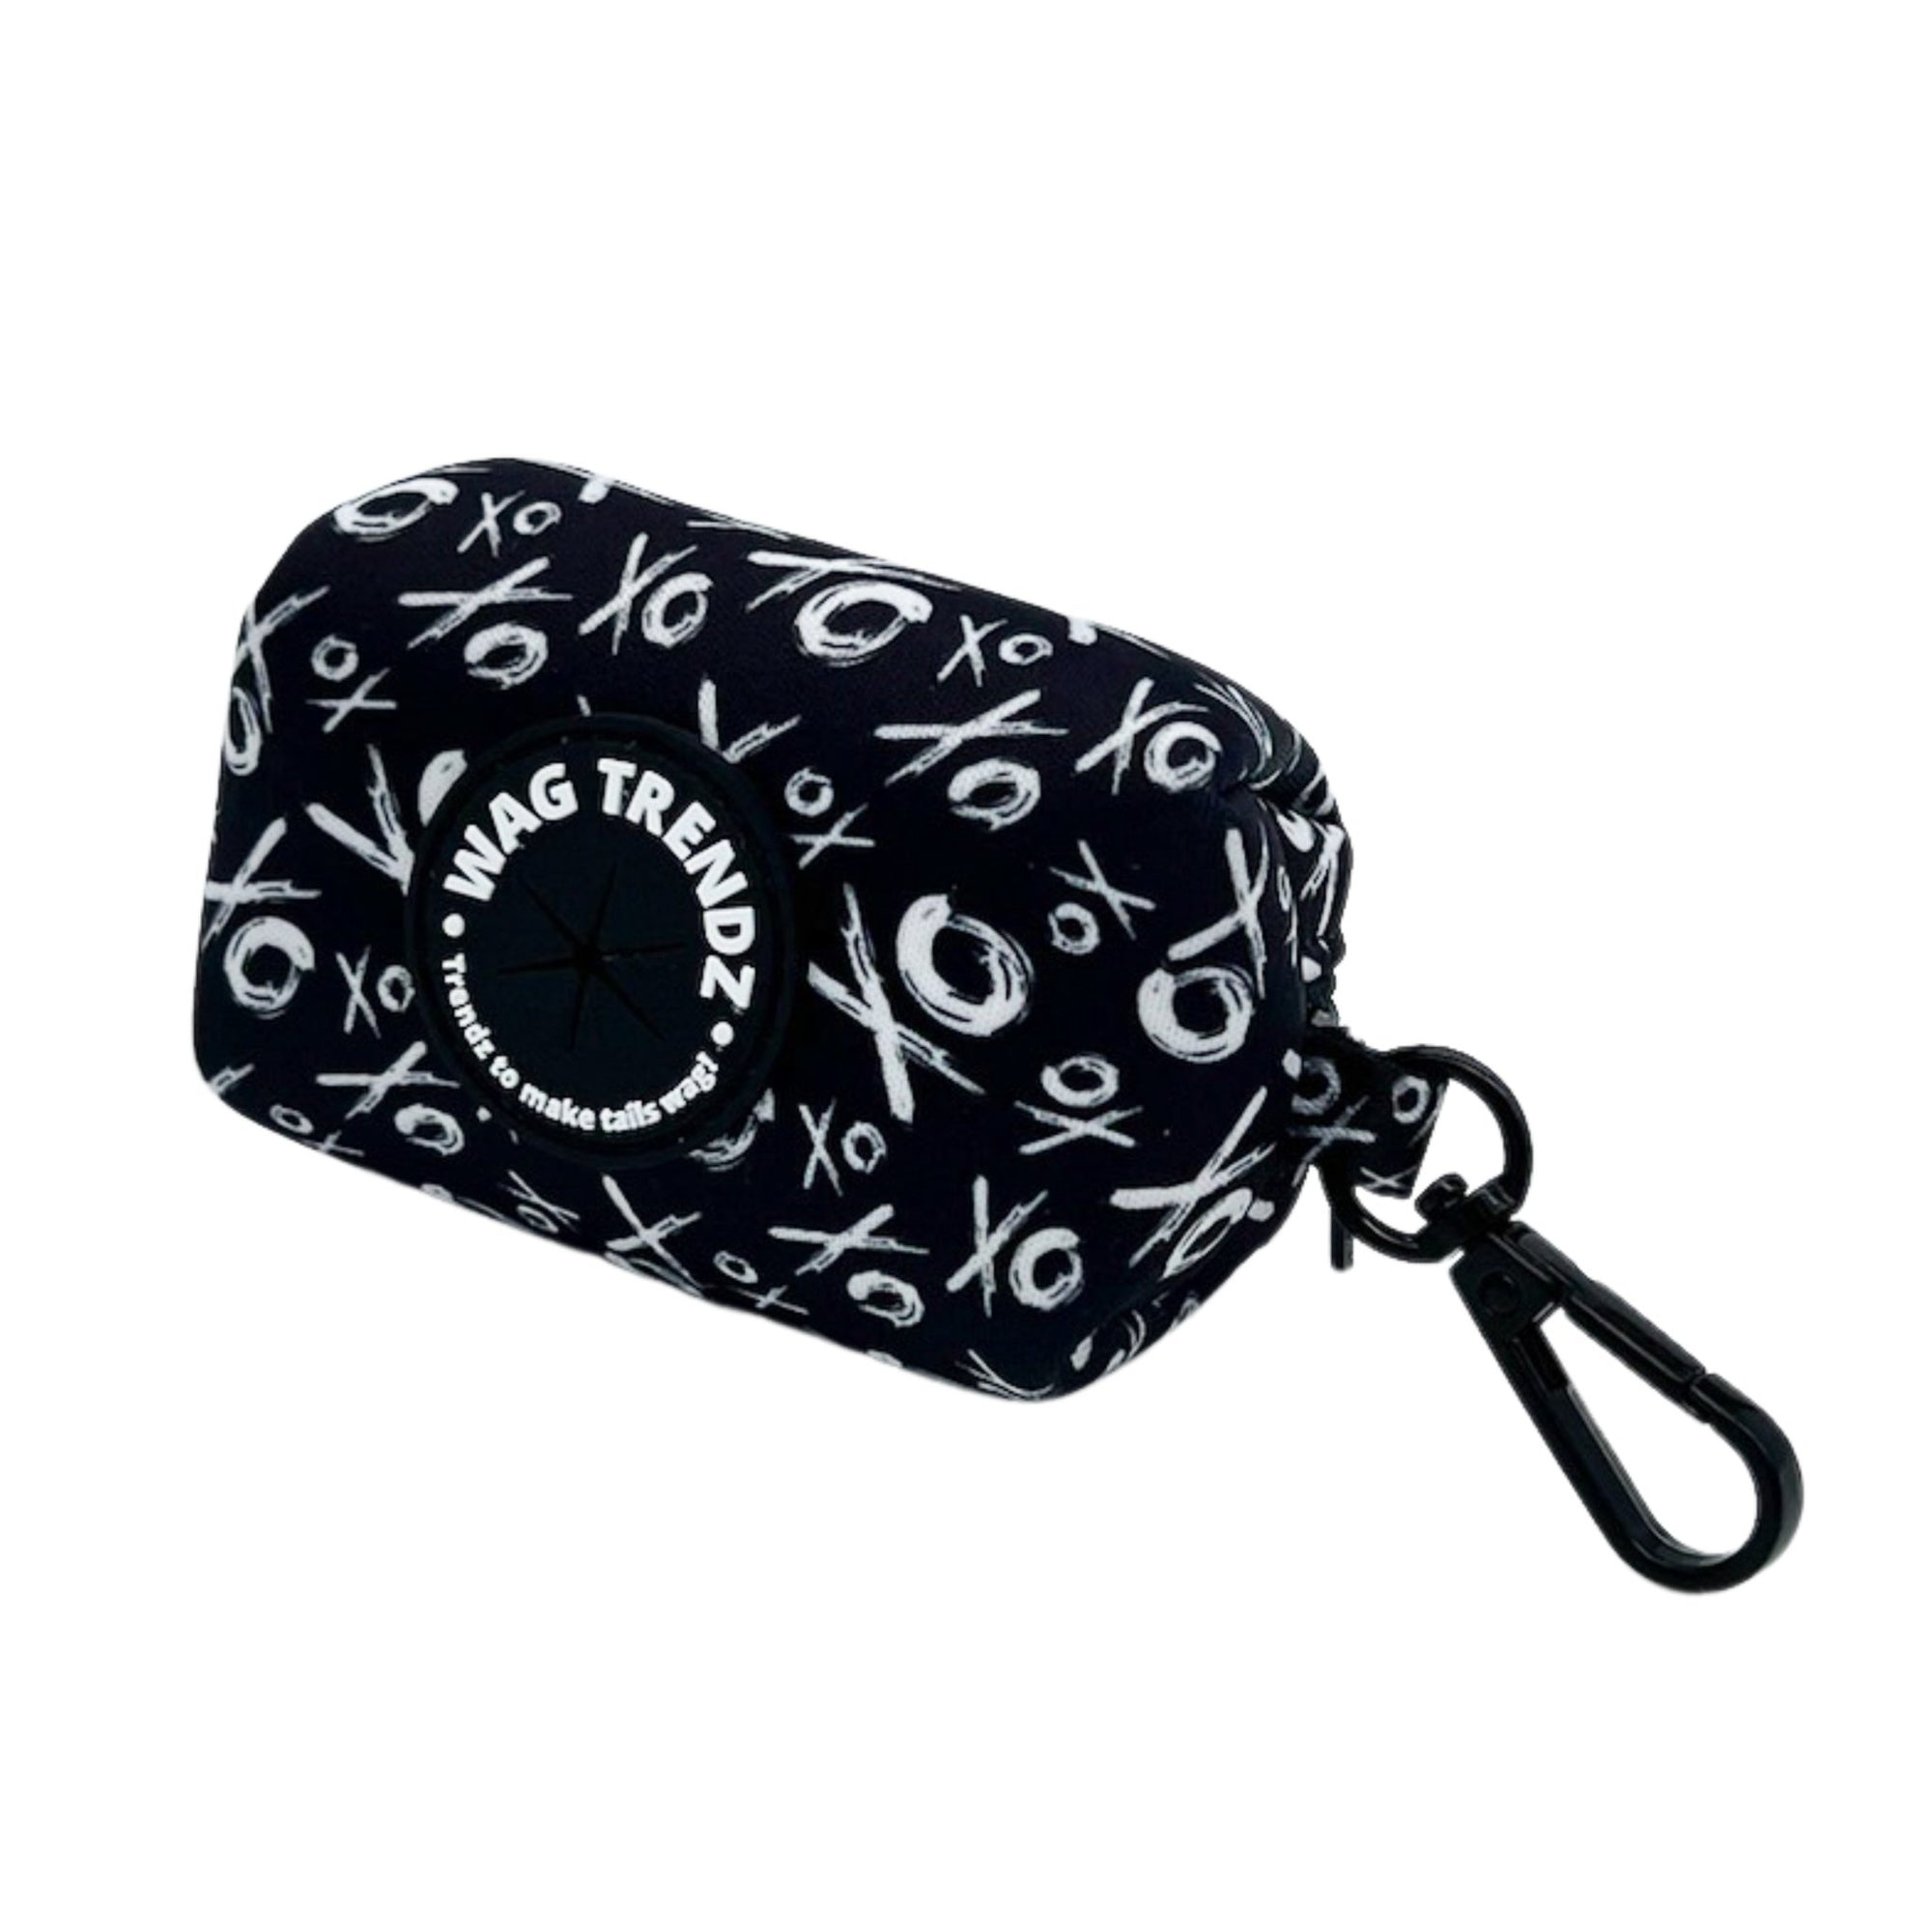 Dog Poo Bag Holder - black &amp; white XO pattern - Hugs &amp; Kisses XO- against white background -Wag Trendz